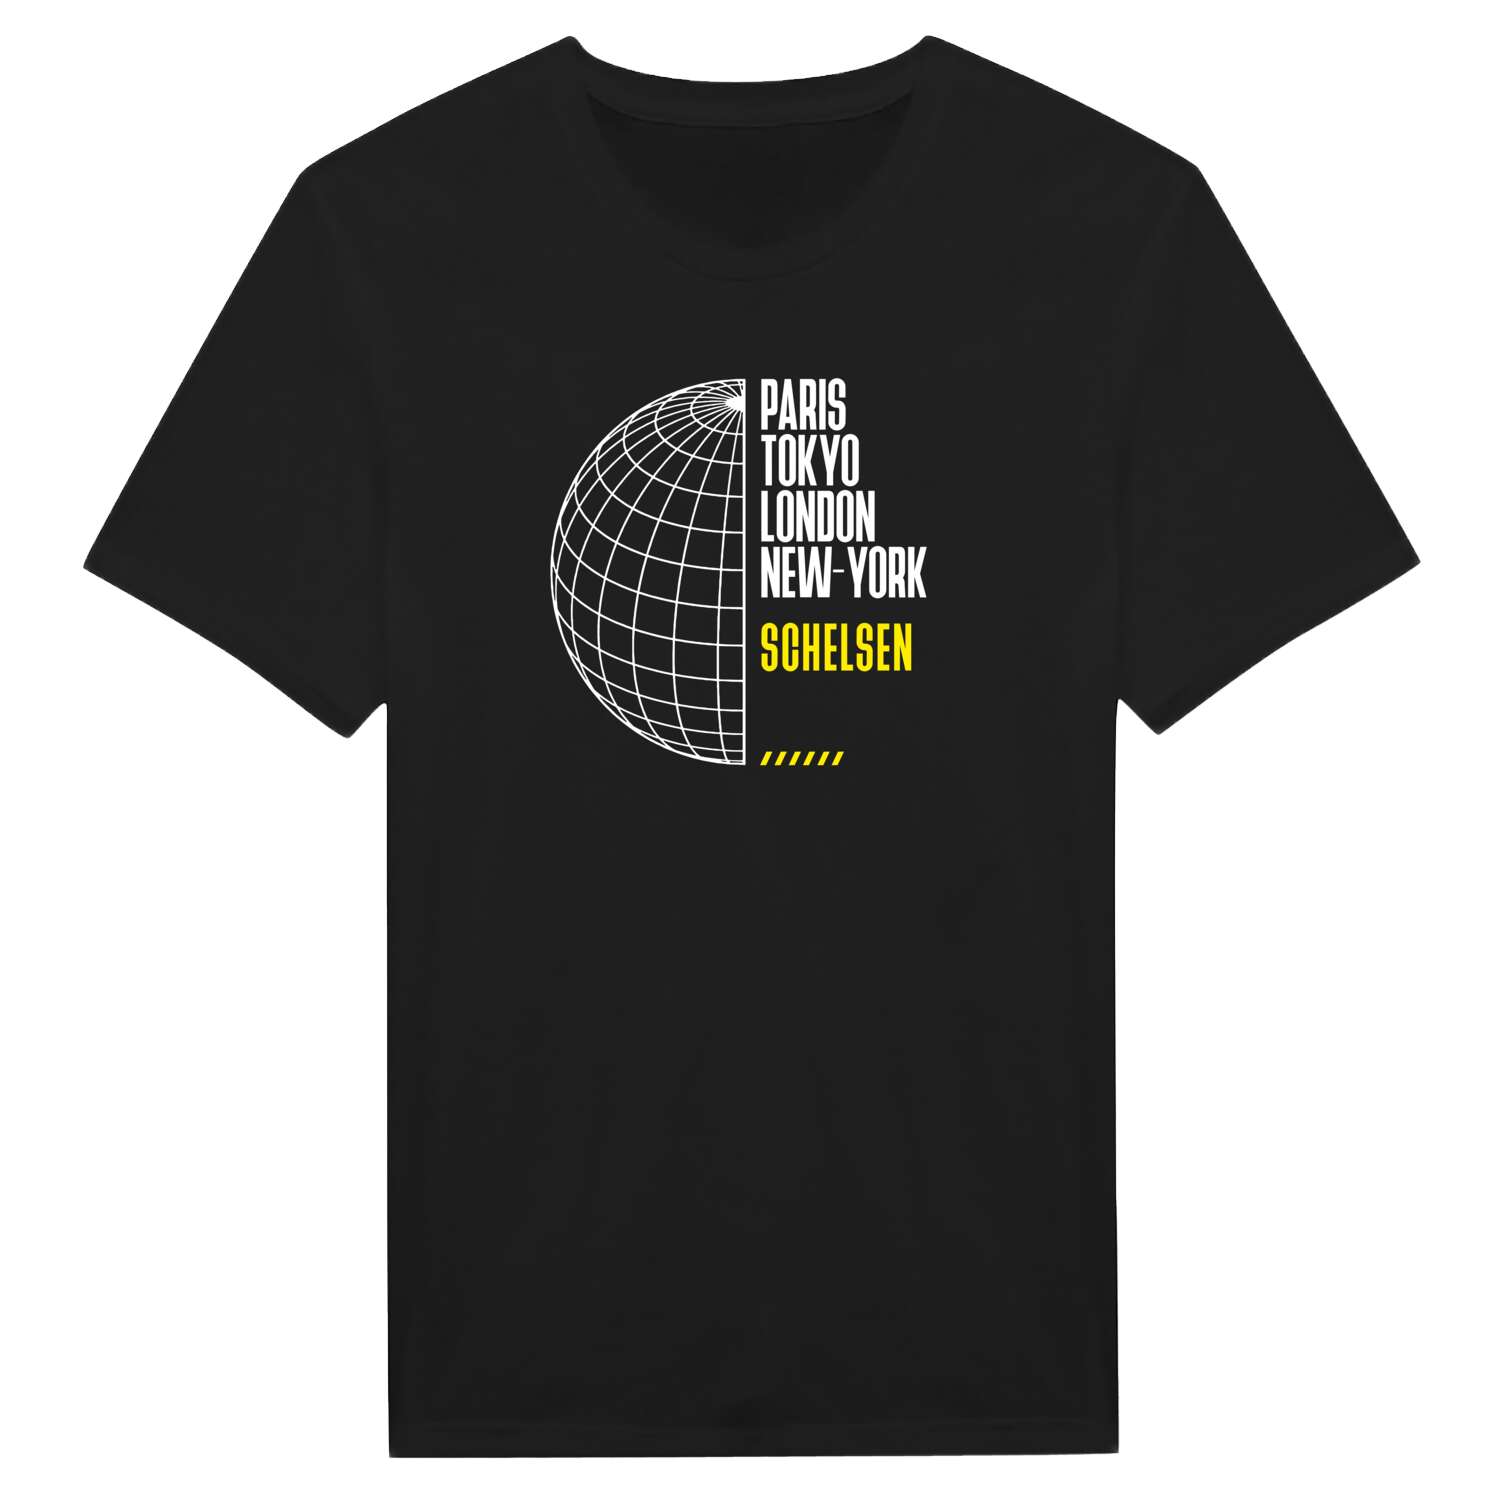 Schelsen T-Shirt »Paris Tokyo London«